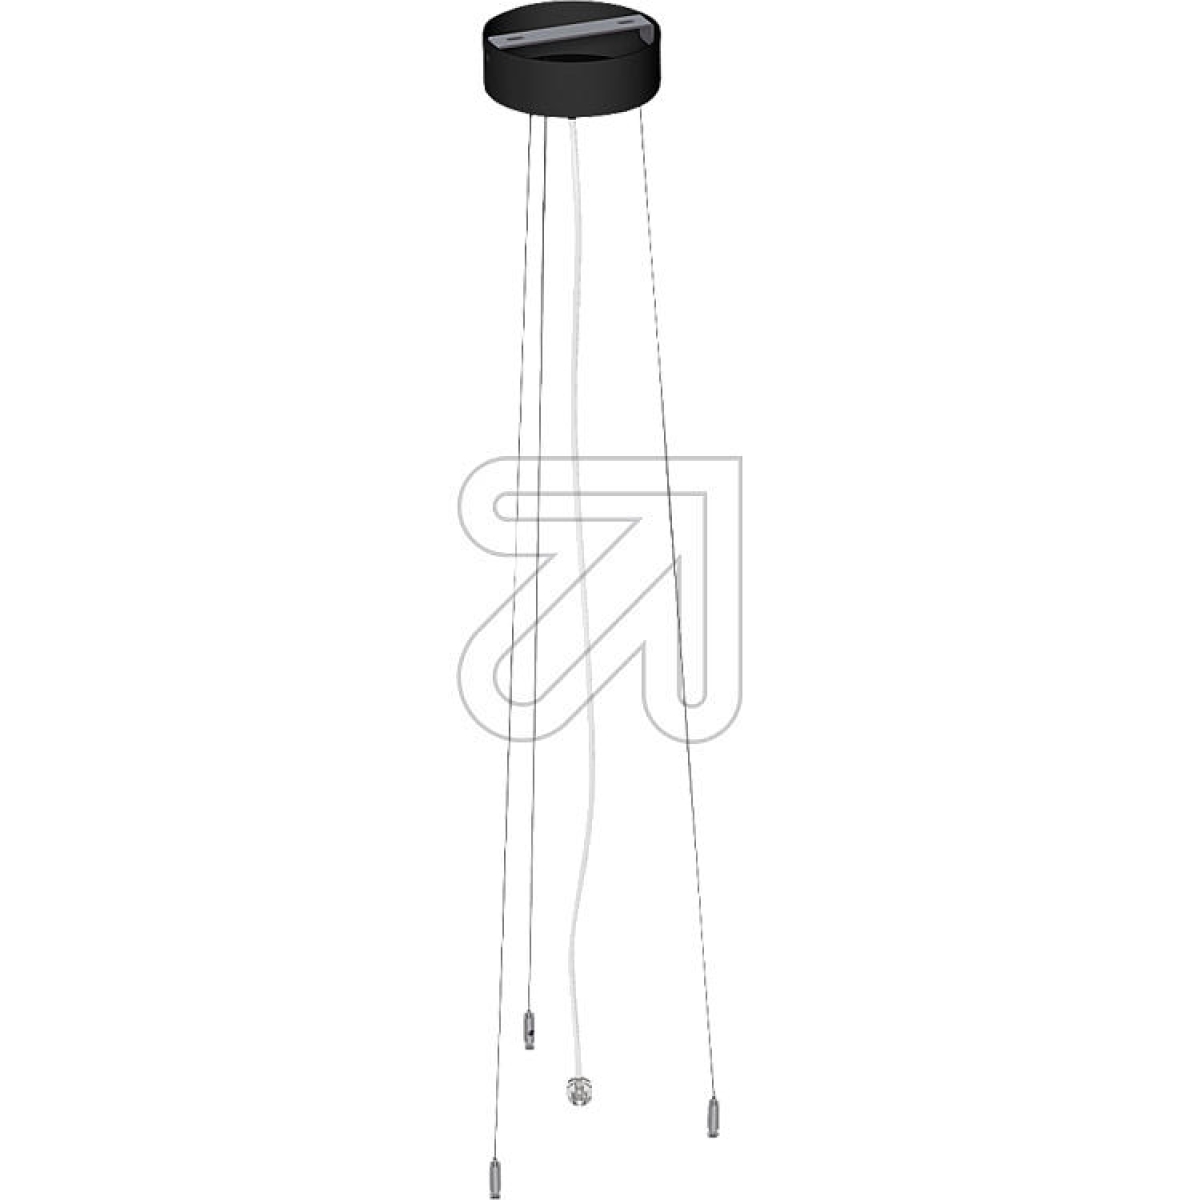 EVN3-way cable suspension set L2.5m, black for item no. 695420, 695920, DUT3009SAHArticle-No: 695945